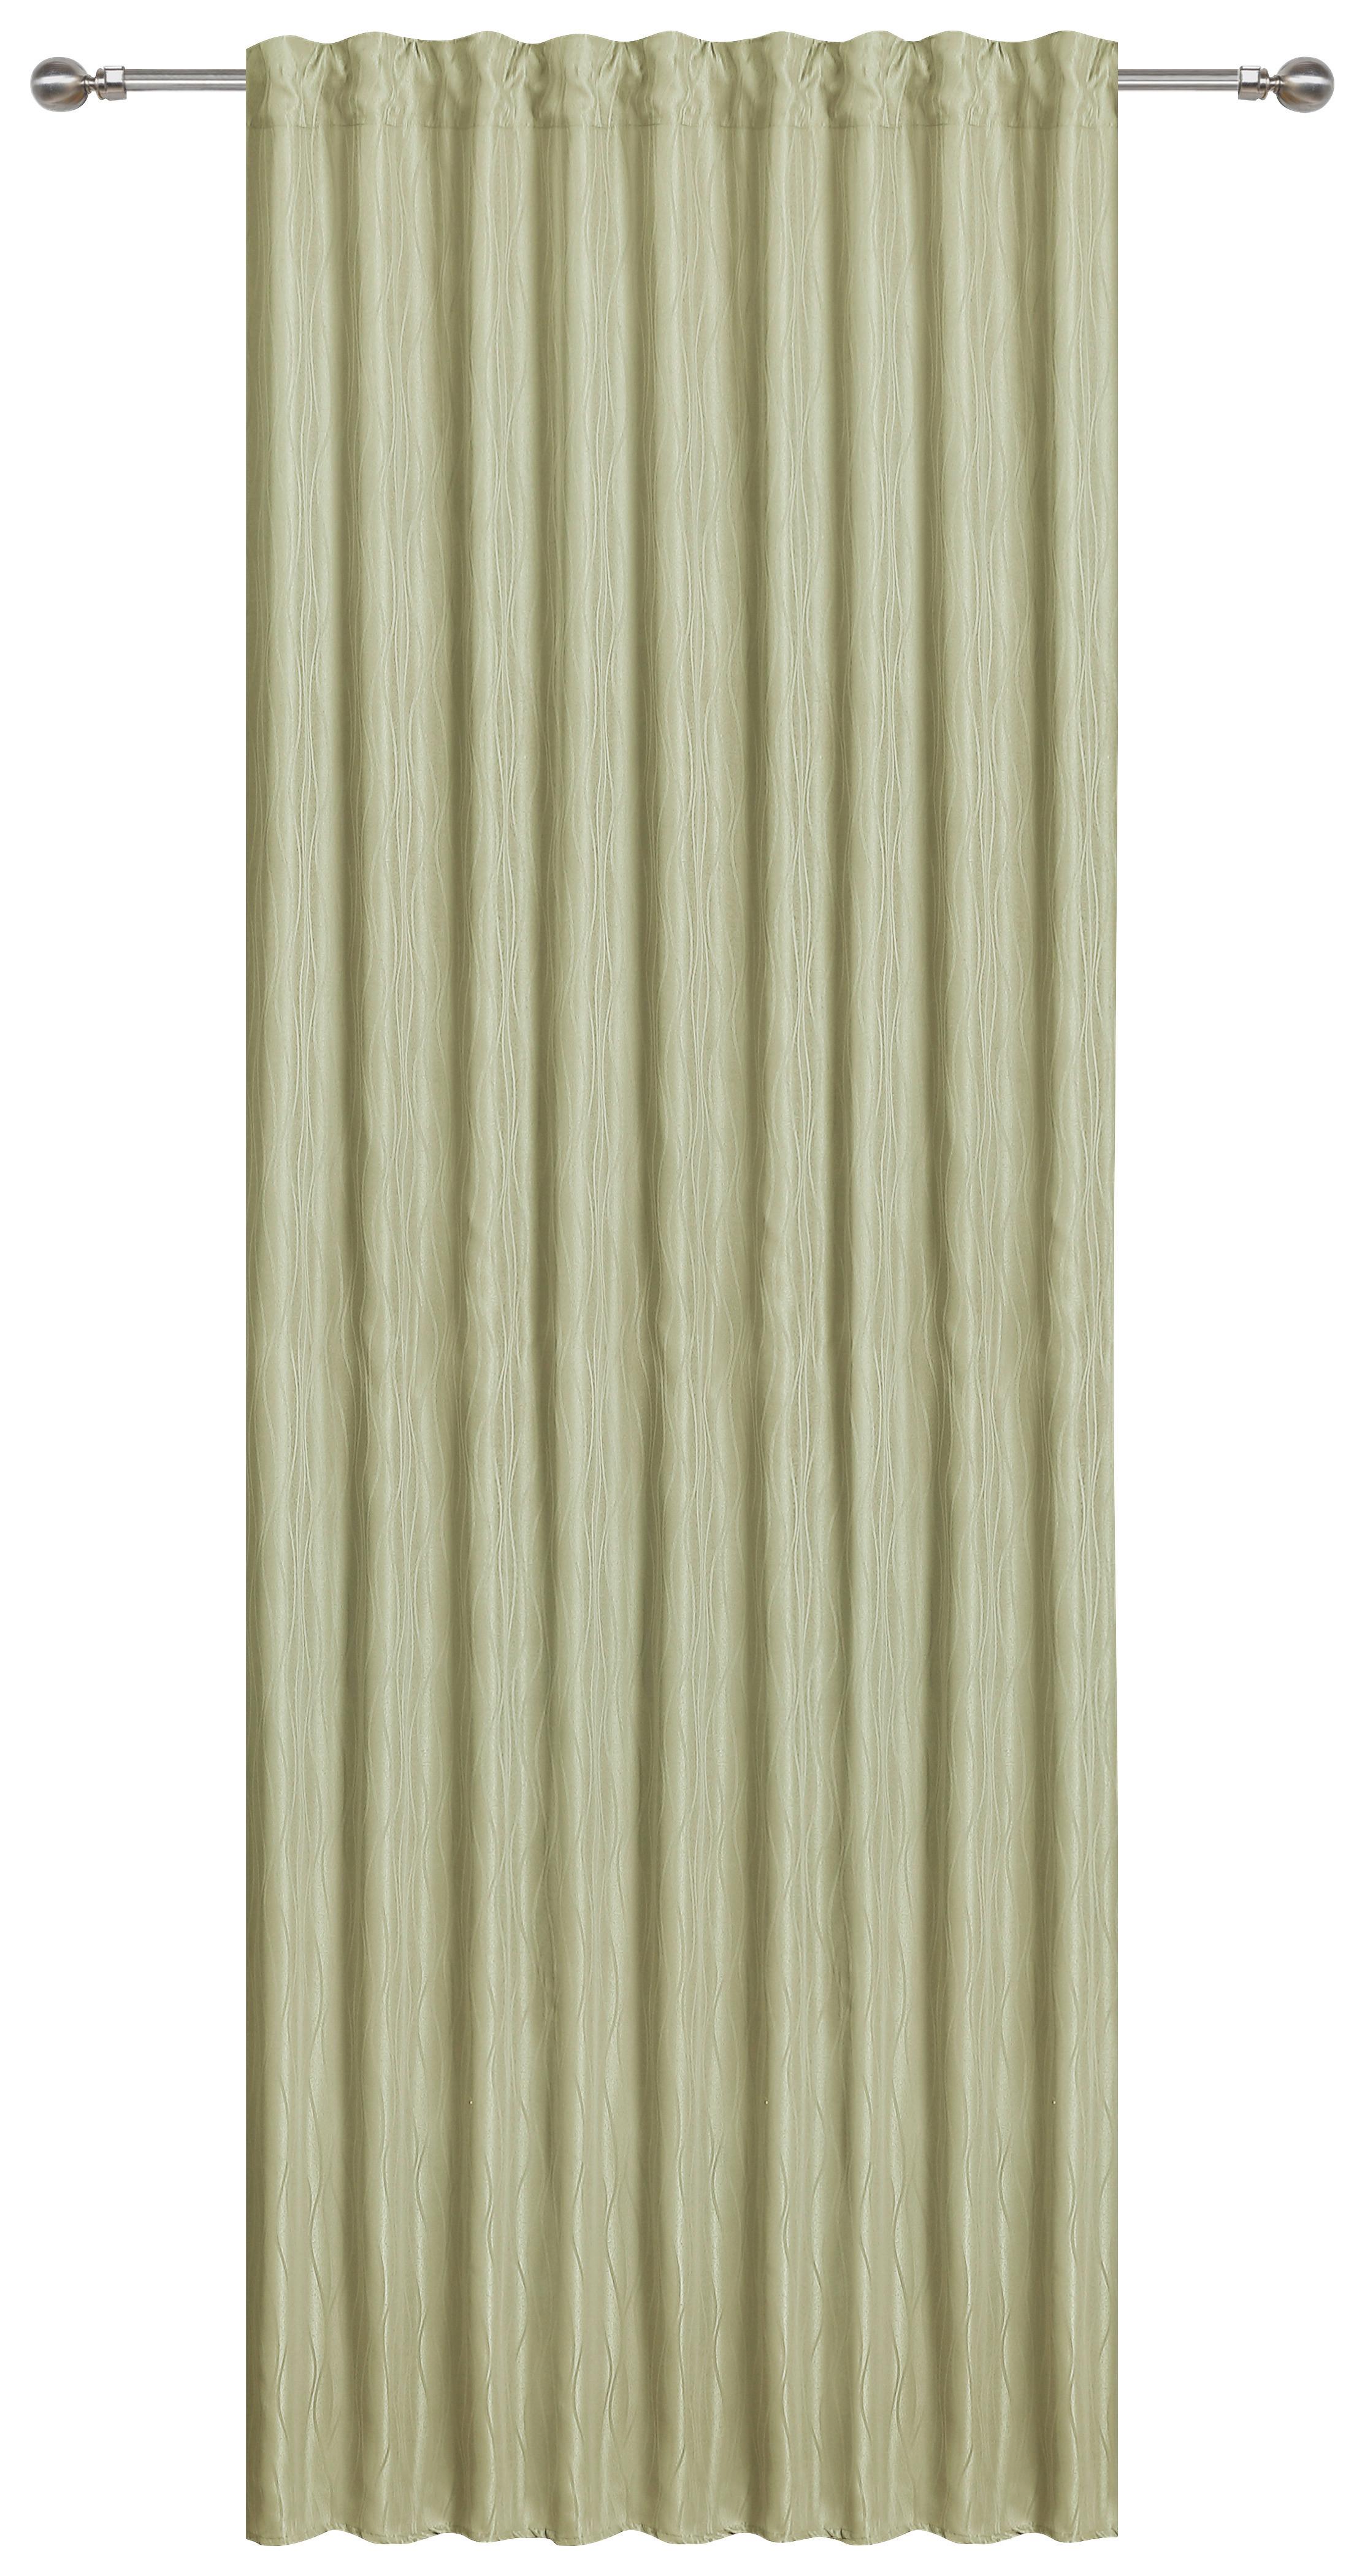 Készfüggöny Vroni - Zöld, romantikus/Landhaus, Textil (140/245cm) - James Wood